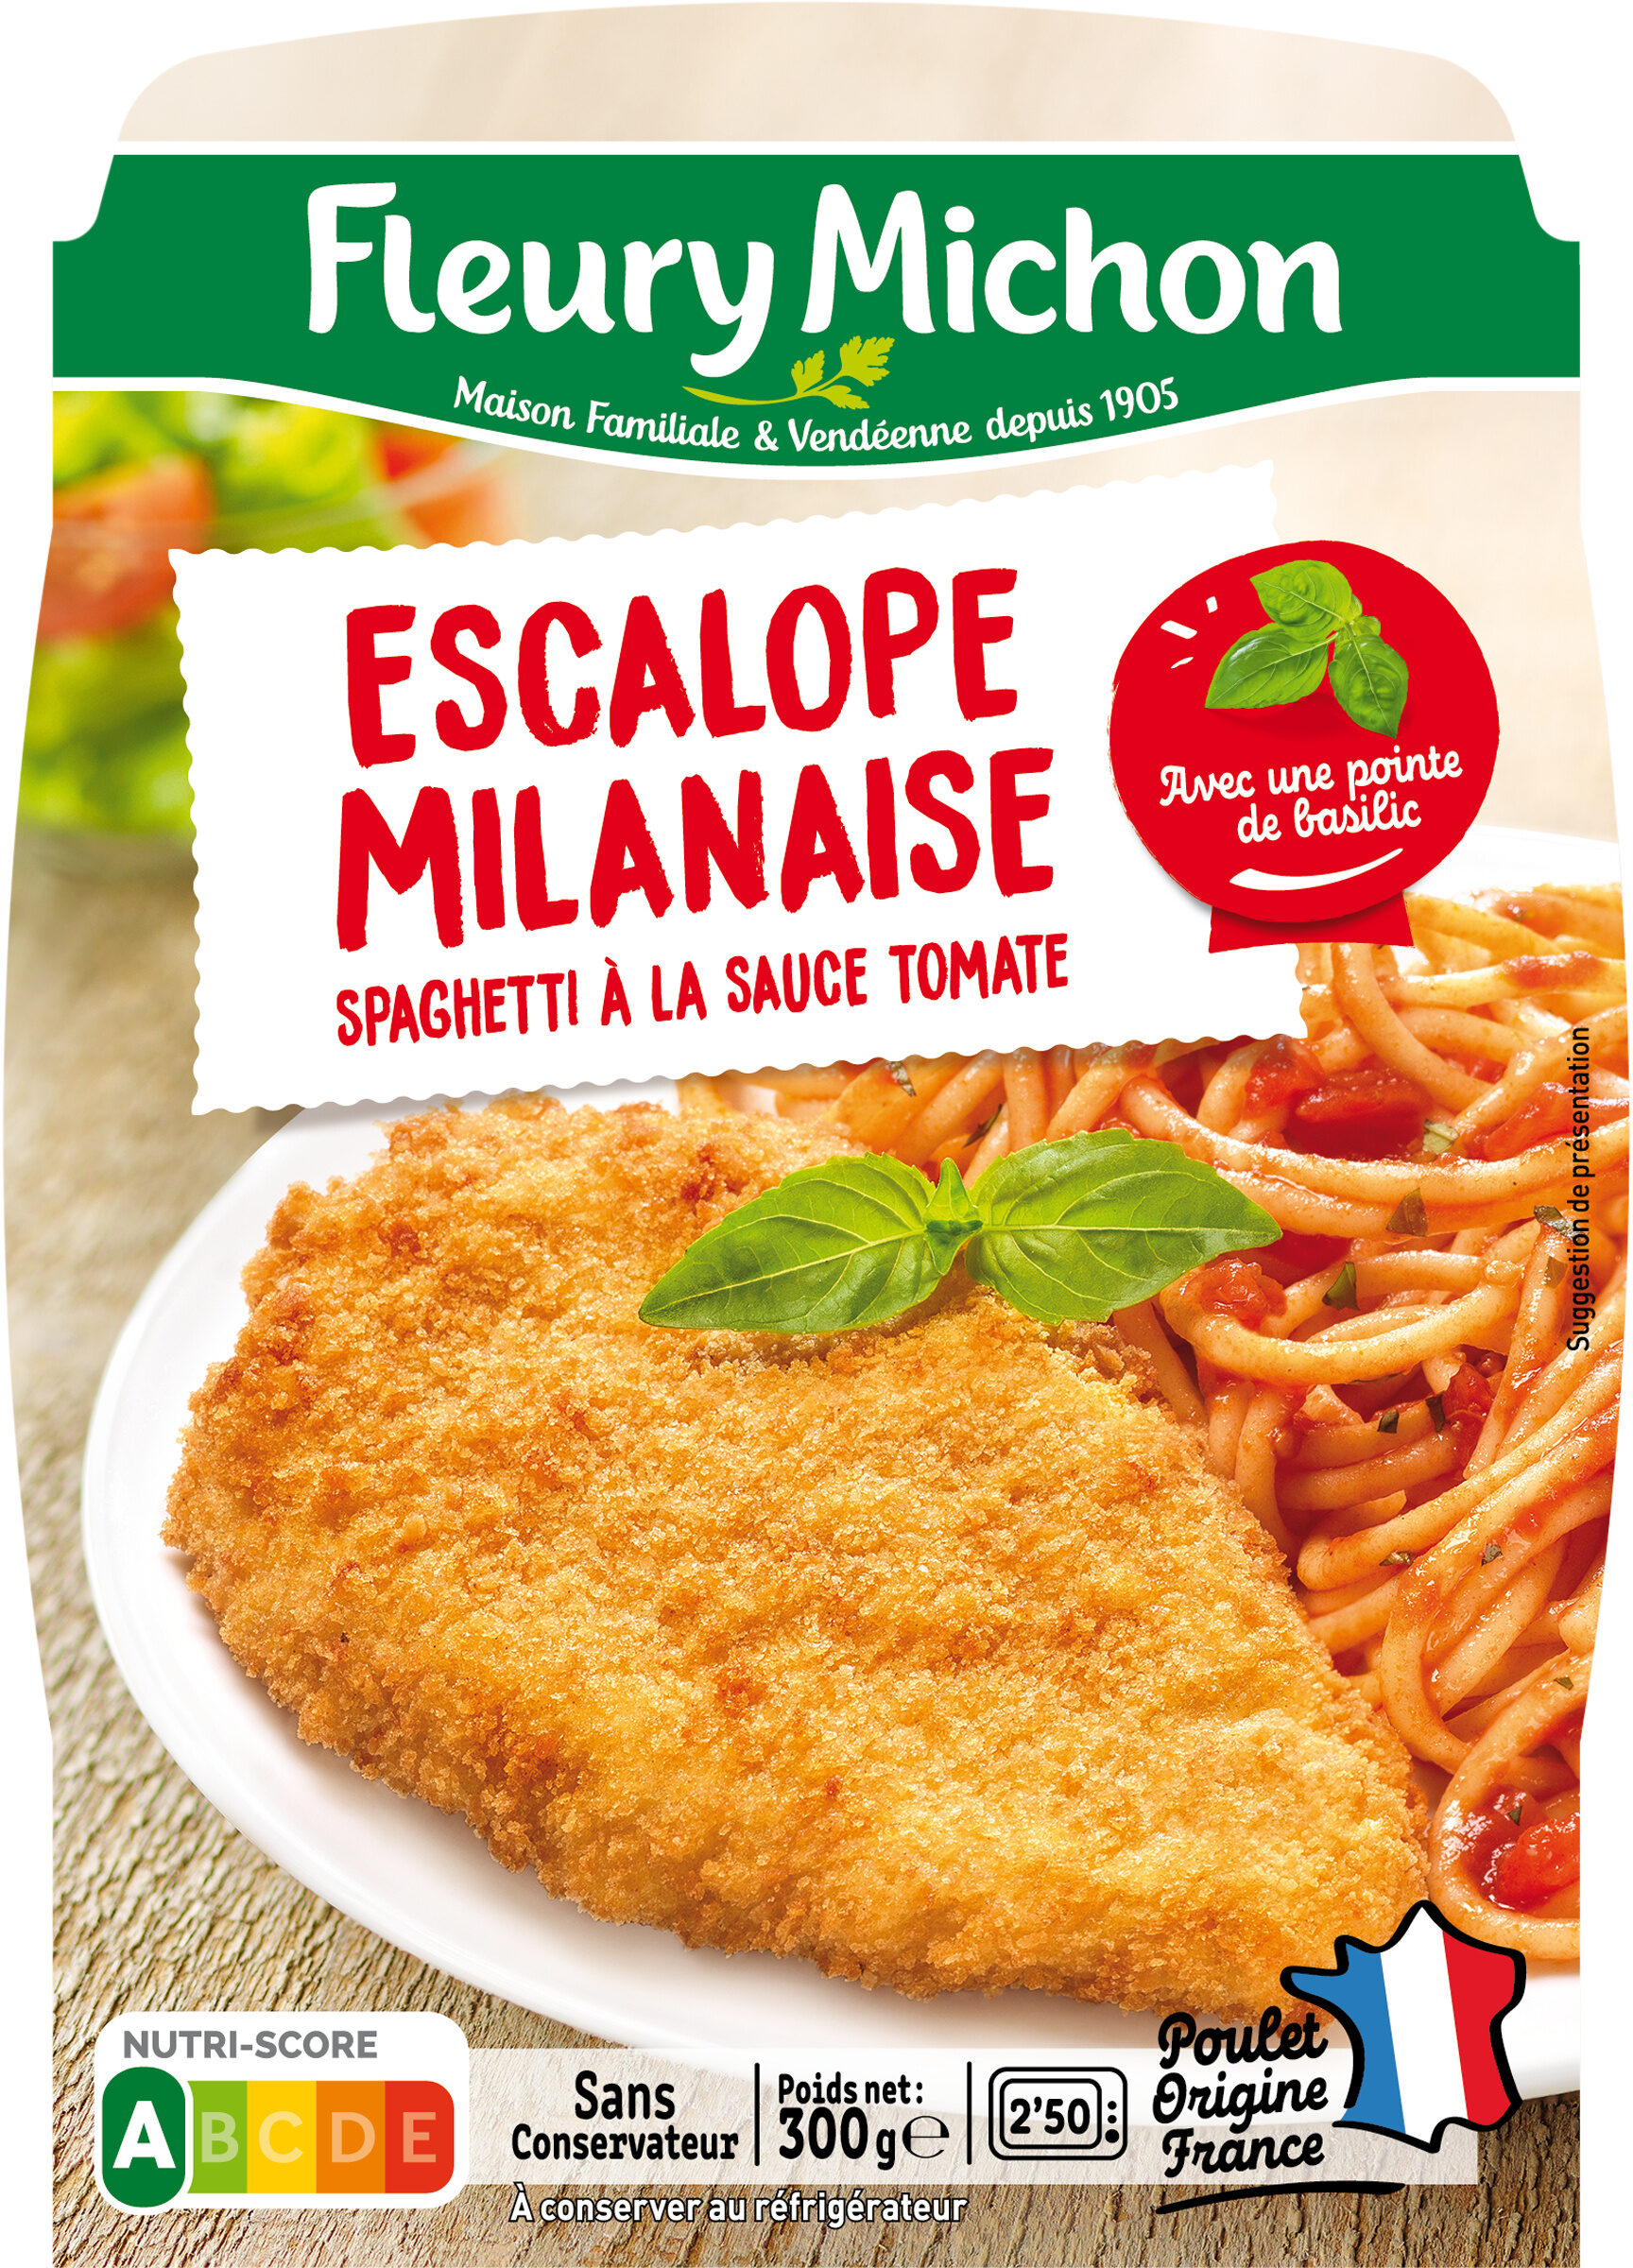 Escalope milanaise & spaghetti à la sauce tomate - Product - fr